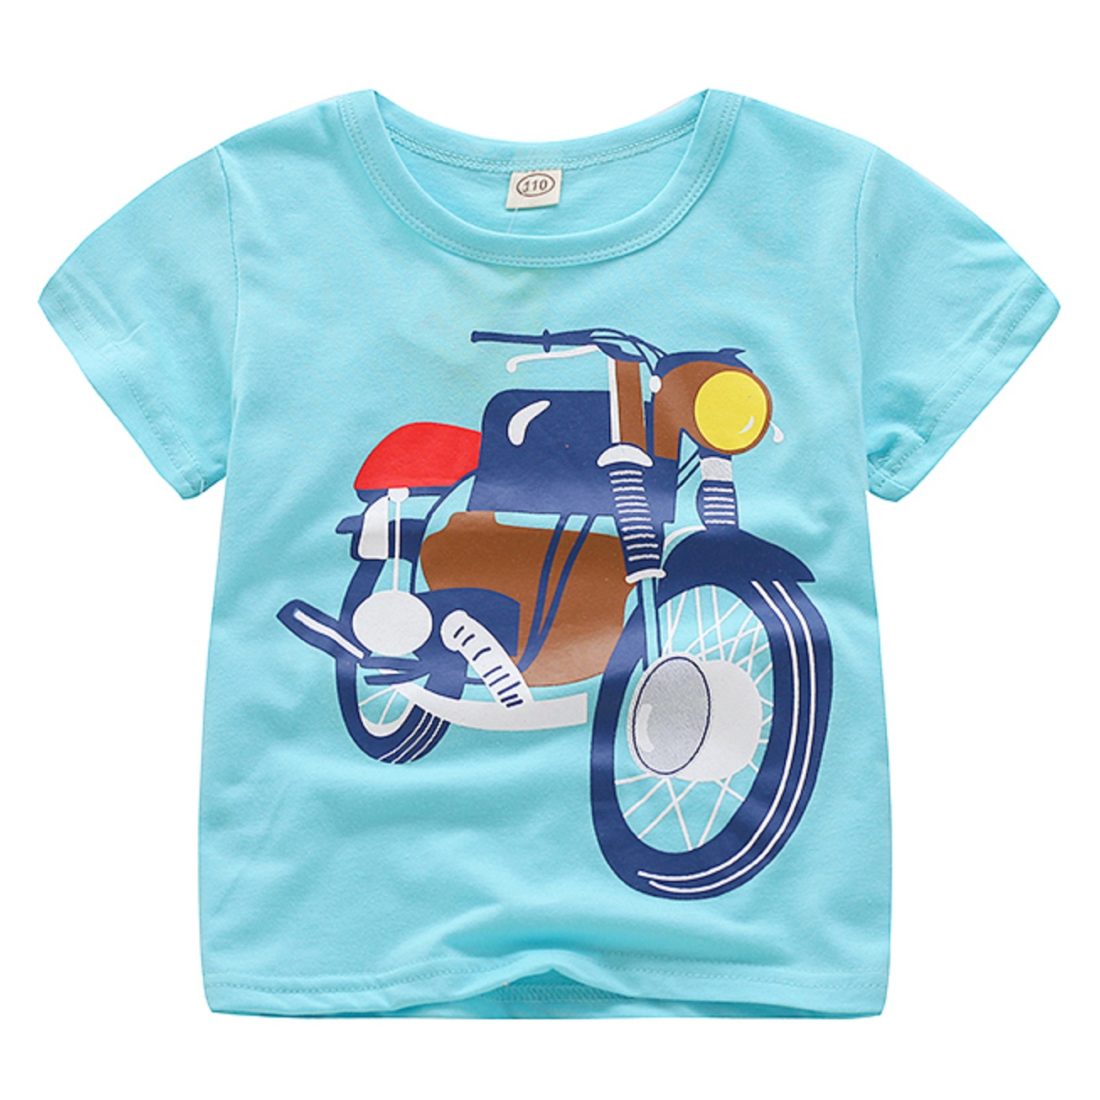 Chlapecké tričko s motorkou - Modré - 8